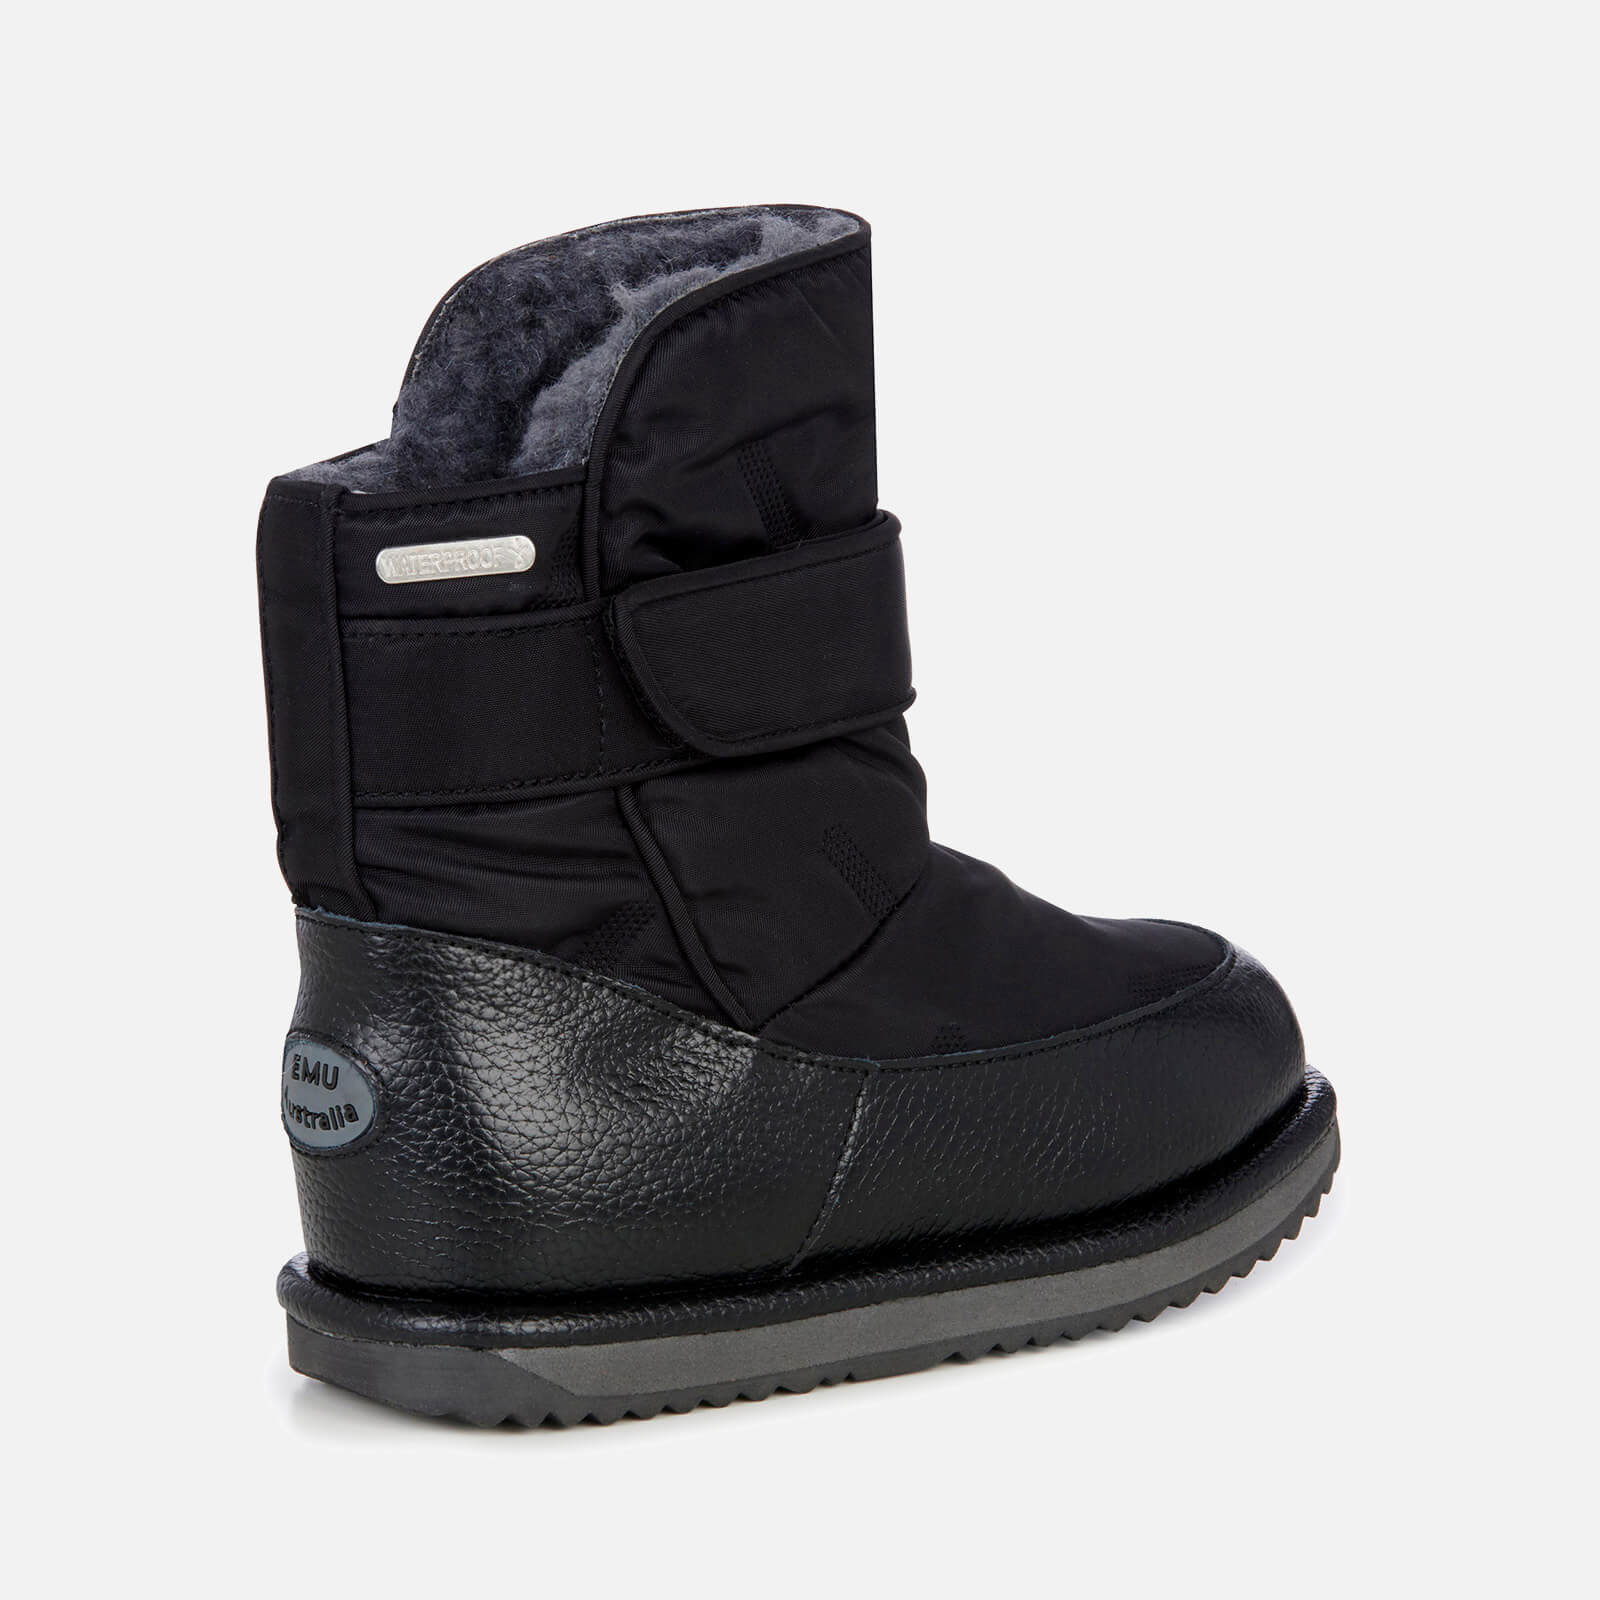 Emu Australia Toddlers' Roth Waterproof Boots - Black - Uk 1 Kids K12360 Childrens Footwear, Black